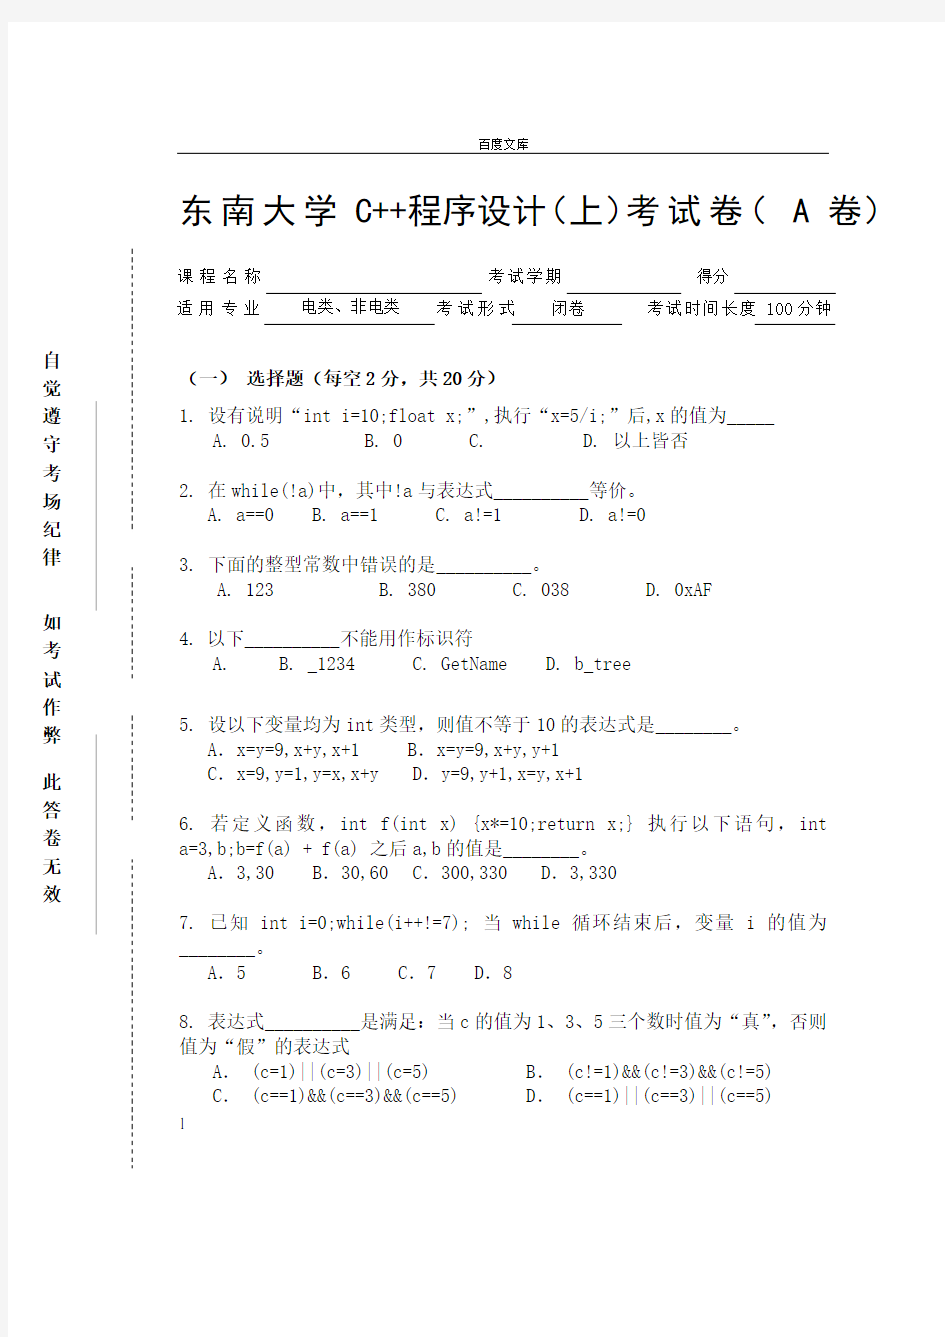 东南大学C程序设计(上)考试卷( A 卷)